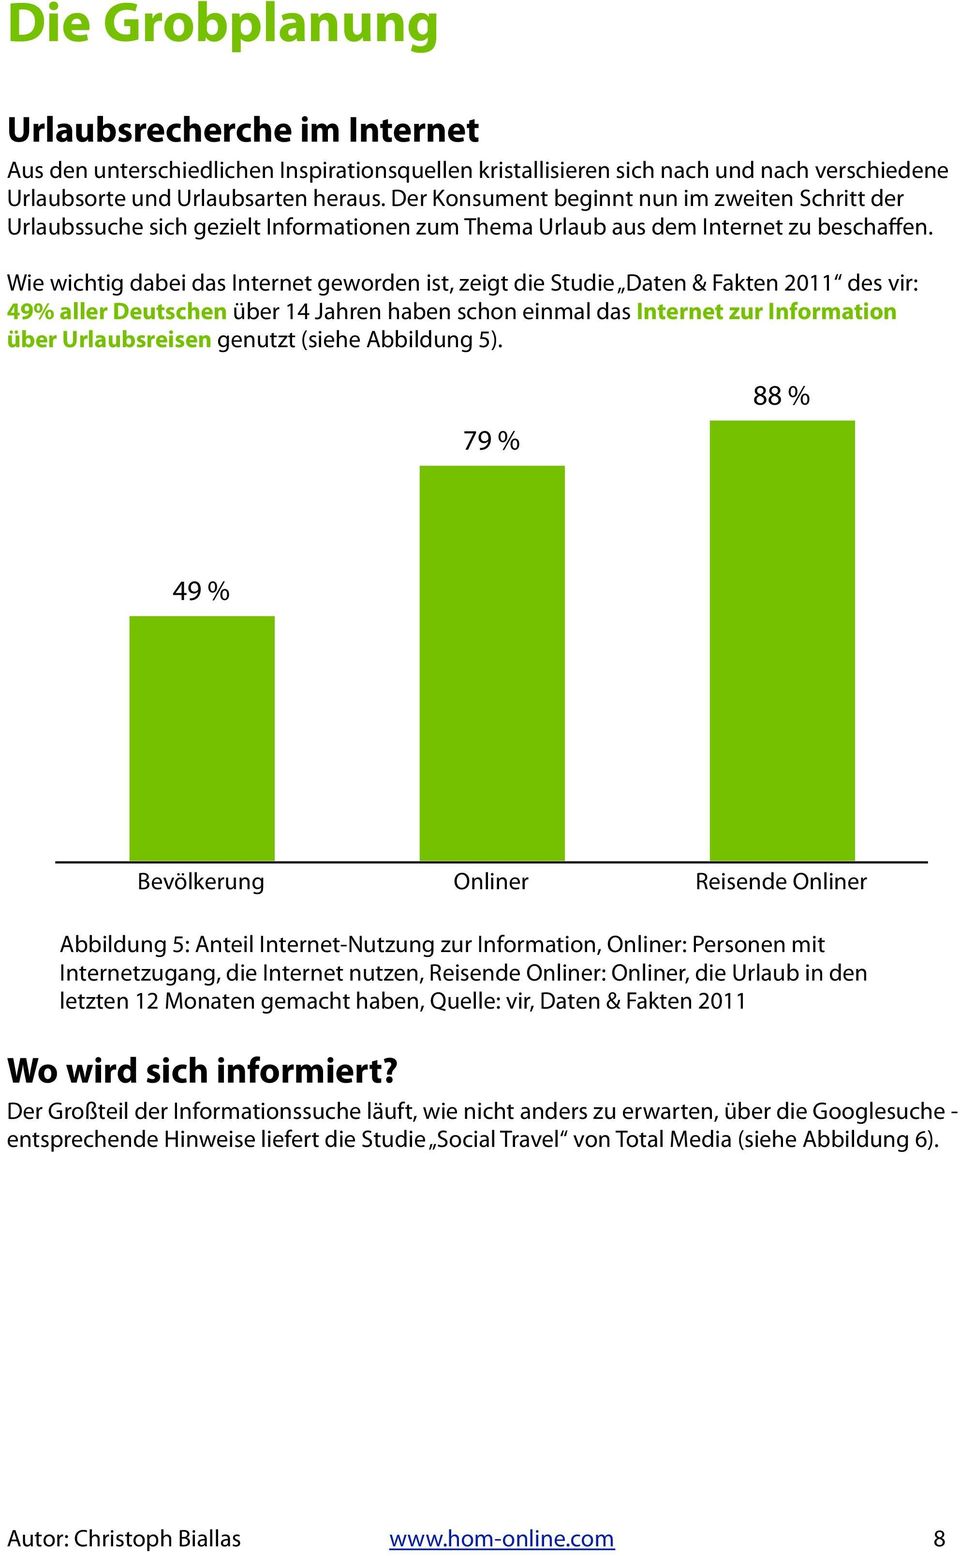 Wie wichtig dabei das Internet geworden ist, zeigt die Studie Daten & Fakten 2011 des vir: 49% aller Deutschen über 14 Jahren haben schon einmal das Internet zur Information über Urlaubsreisen